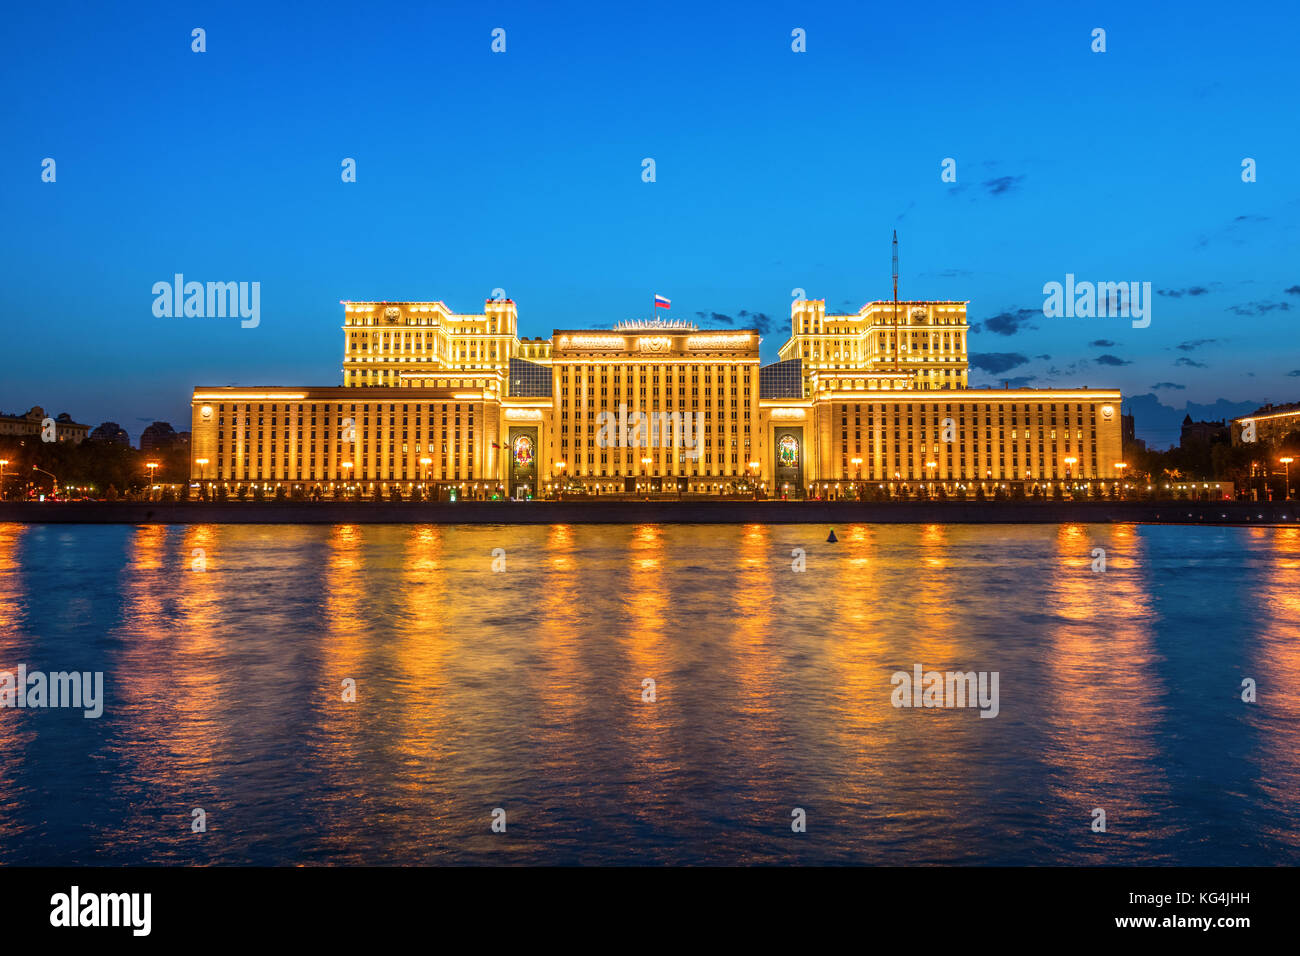 La Moskva et le bâtiment principal du ministère de la défense de la Fédération de Russie pendant le coucher du soleil. Moscou, Russie. Banque D'Images